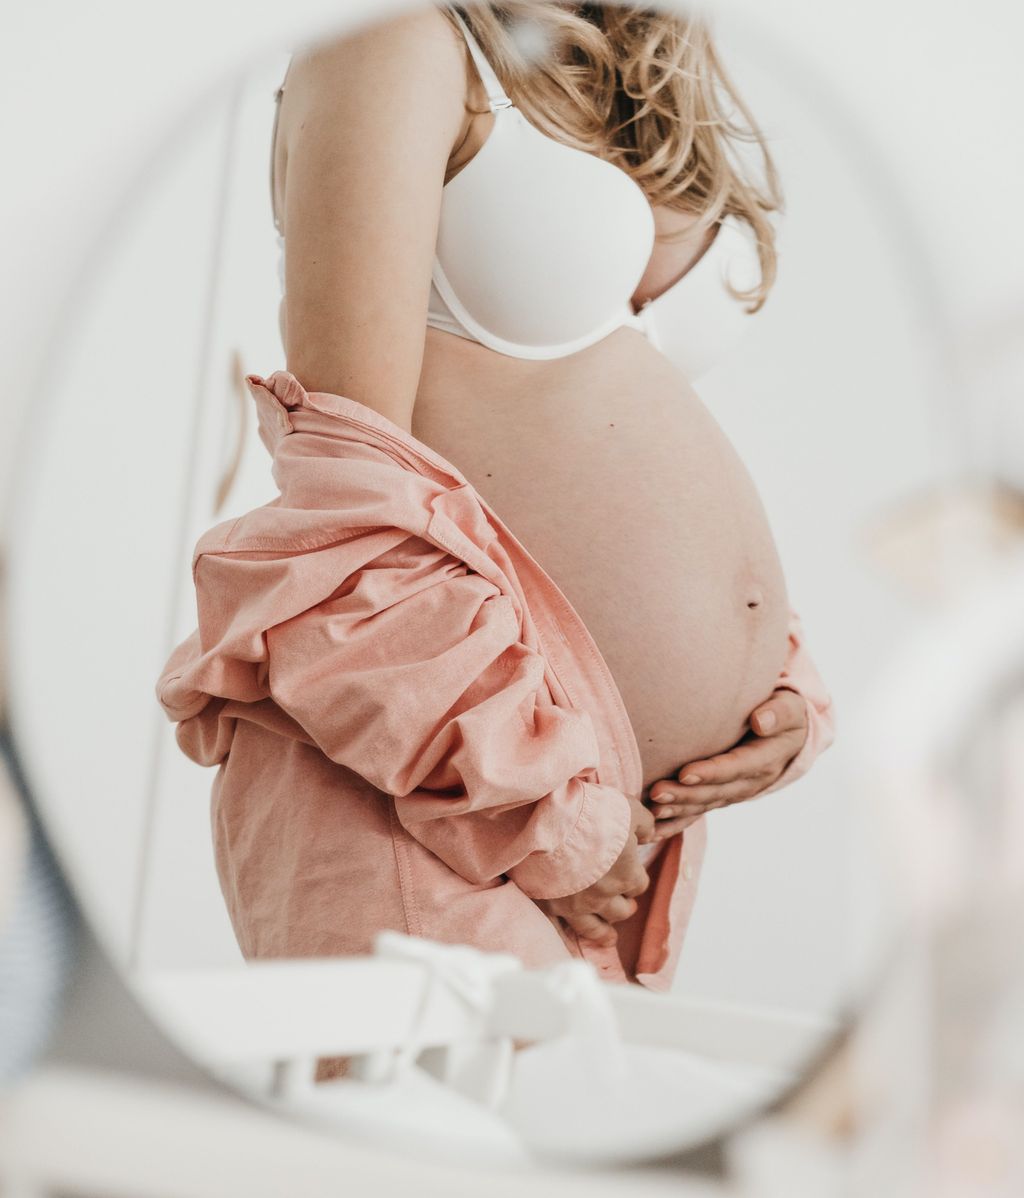 El cuerpo cambia mucho durante el embarazo. FUENTE: Pexels